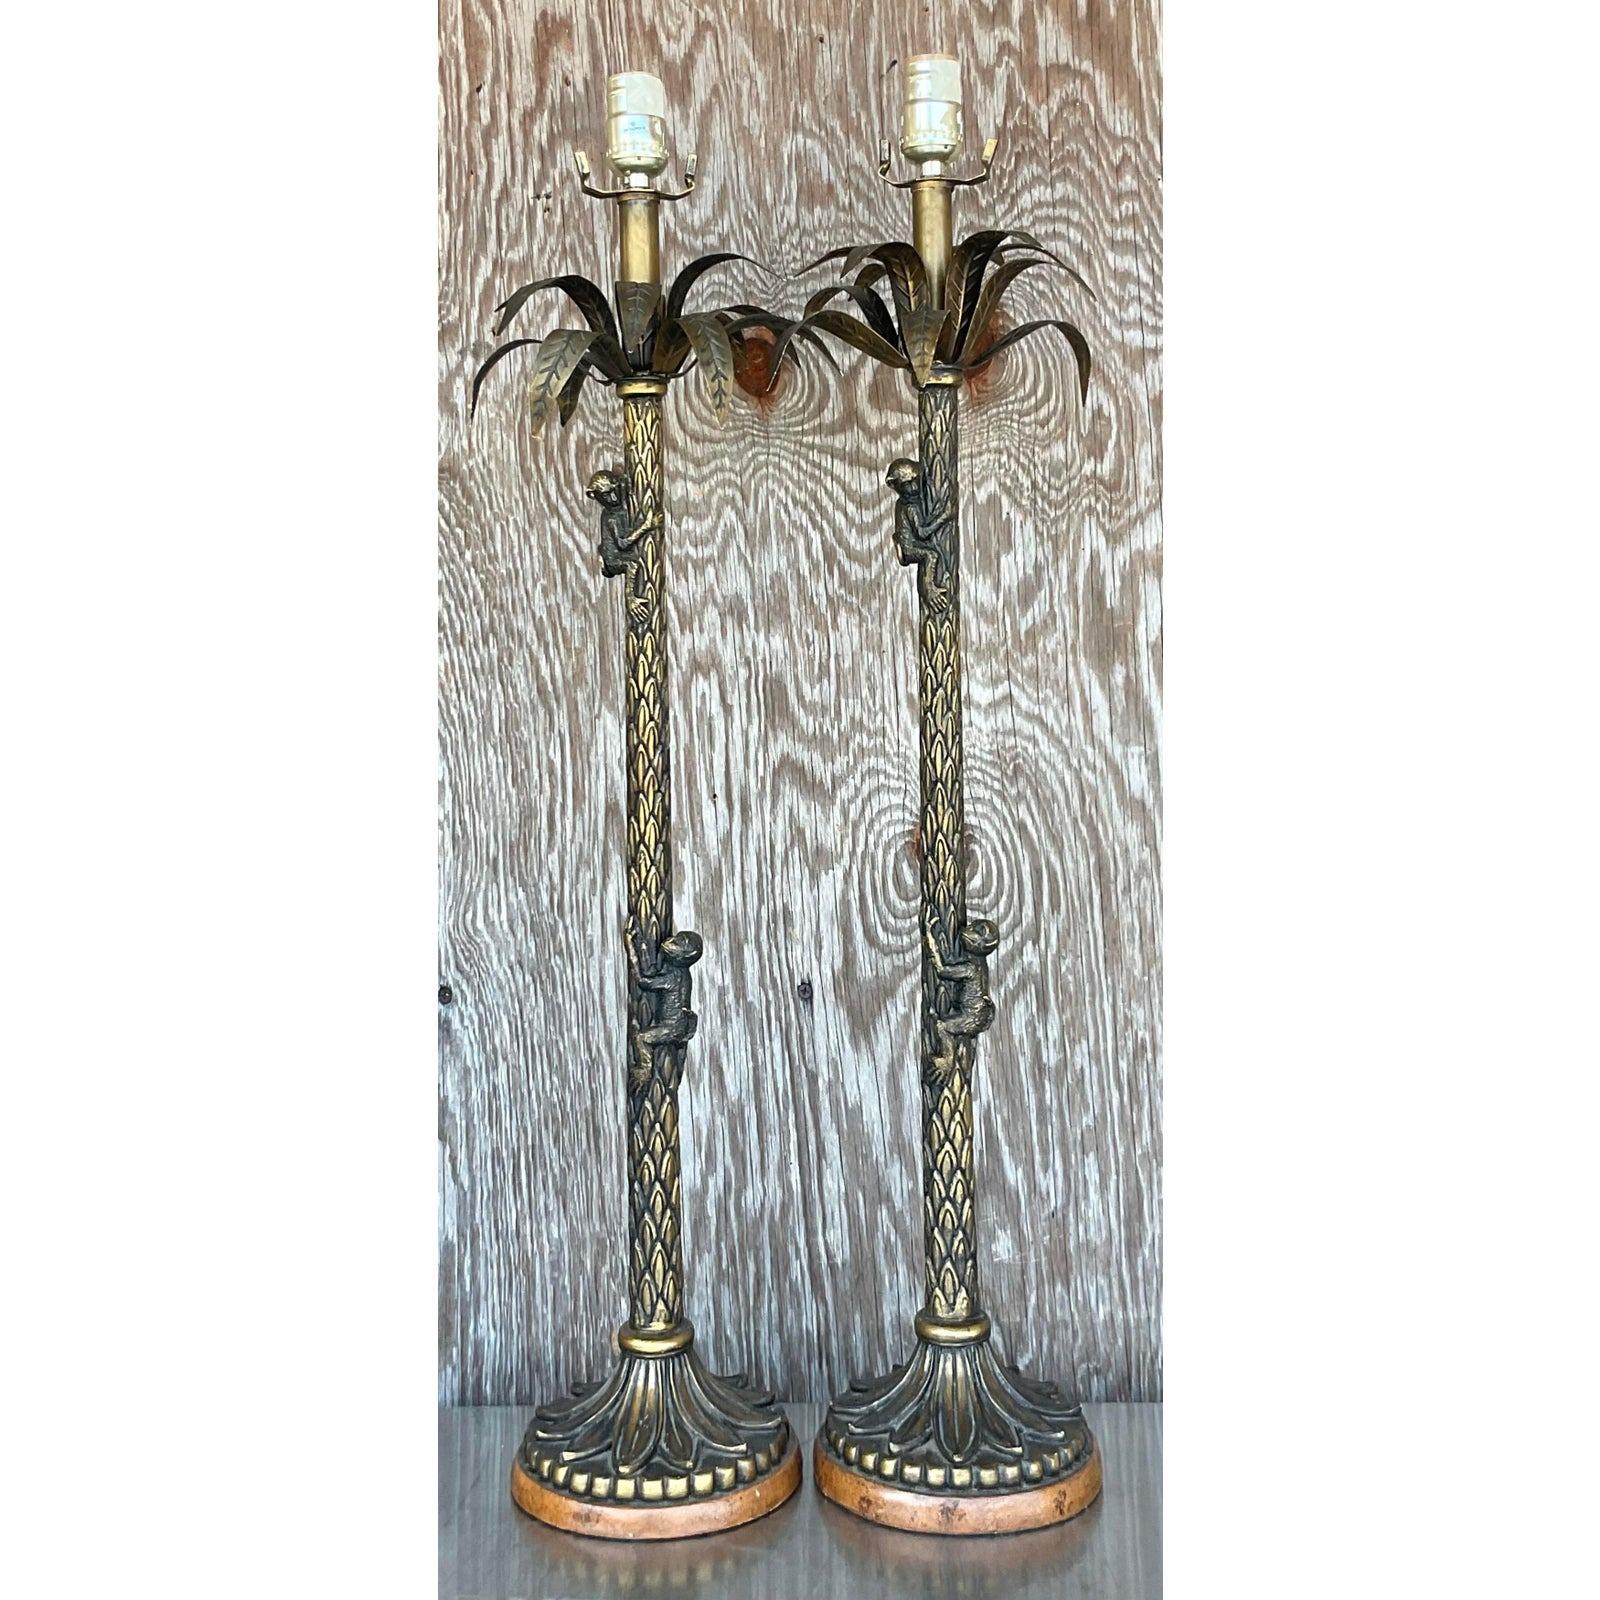 Une magnifique paire de lampes vintage en forme de palmier et de singe qui peut ajouter une touche de vie à n'importe quel décor côtier. Acquis dans une propriété de Palm Beach.

Les lampes sont en très bon état. Petites éraflures et imperfections